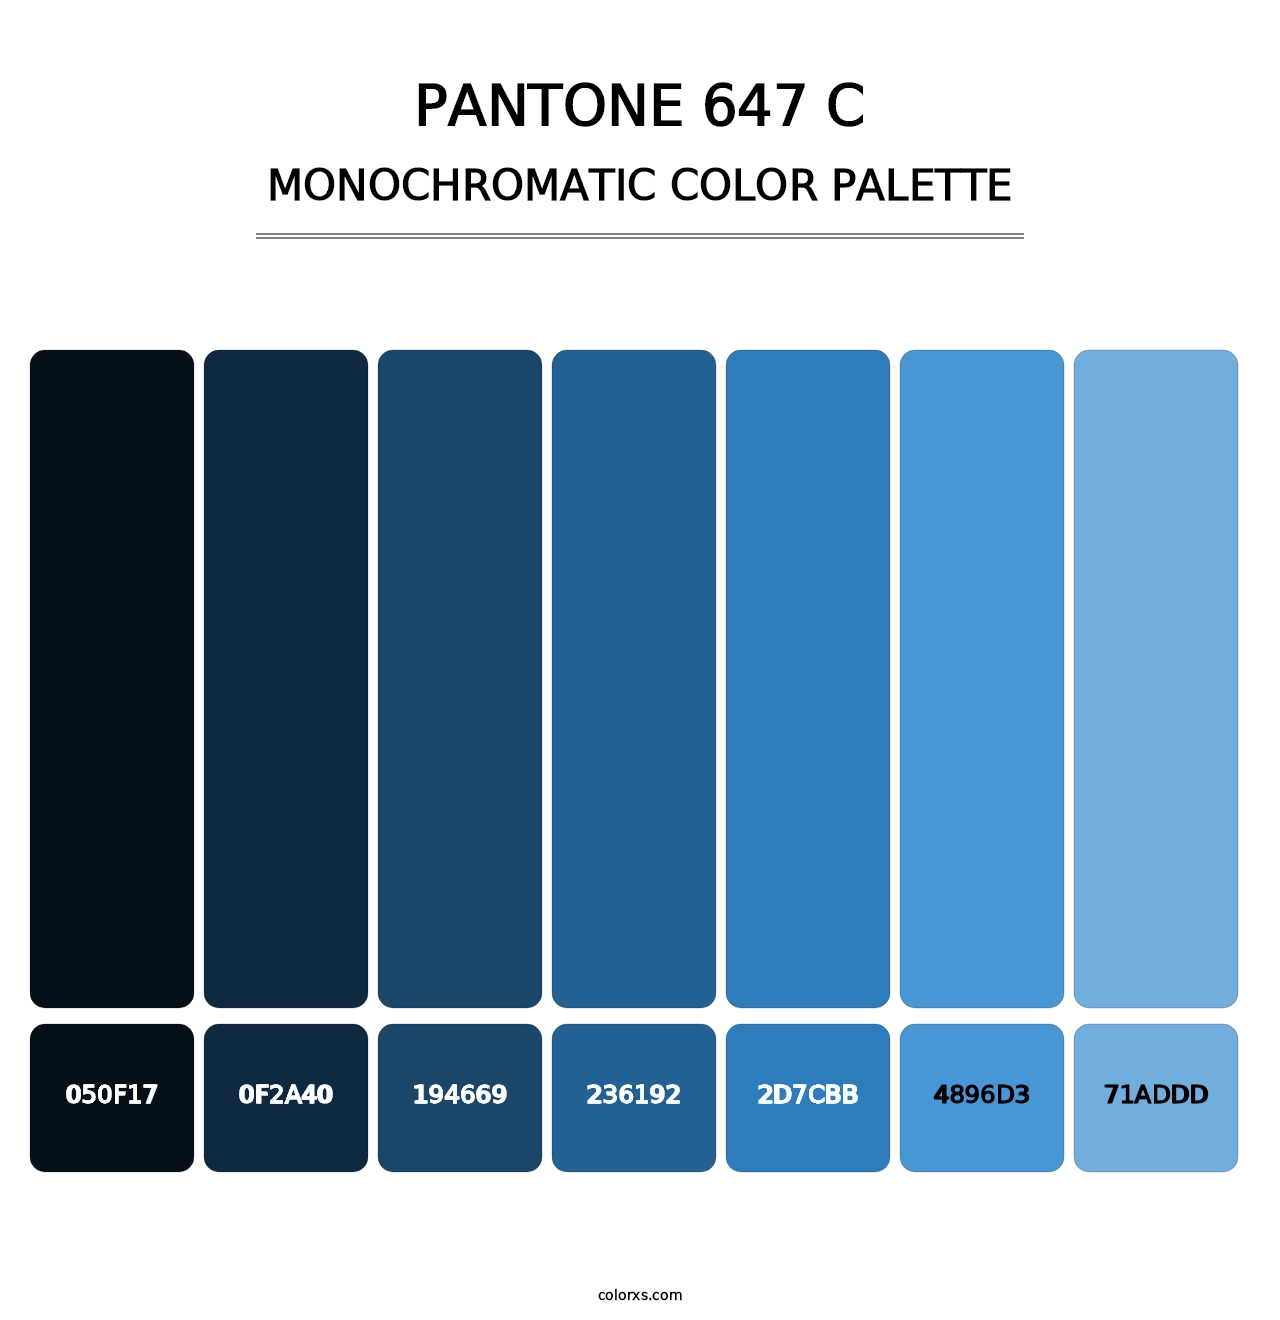 PANTONE 647 C - Monochromatic Color Palette